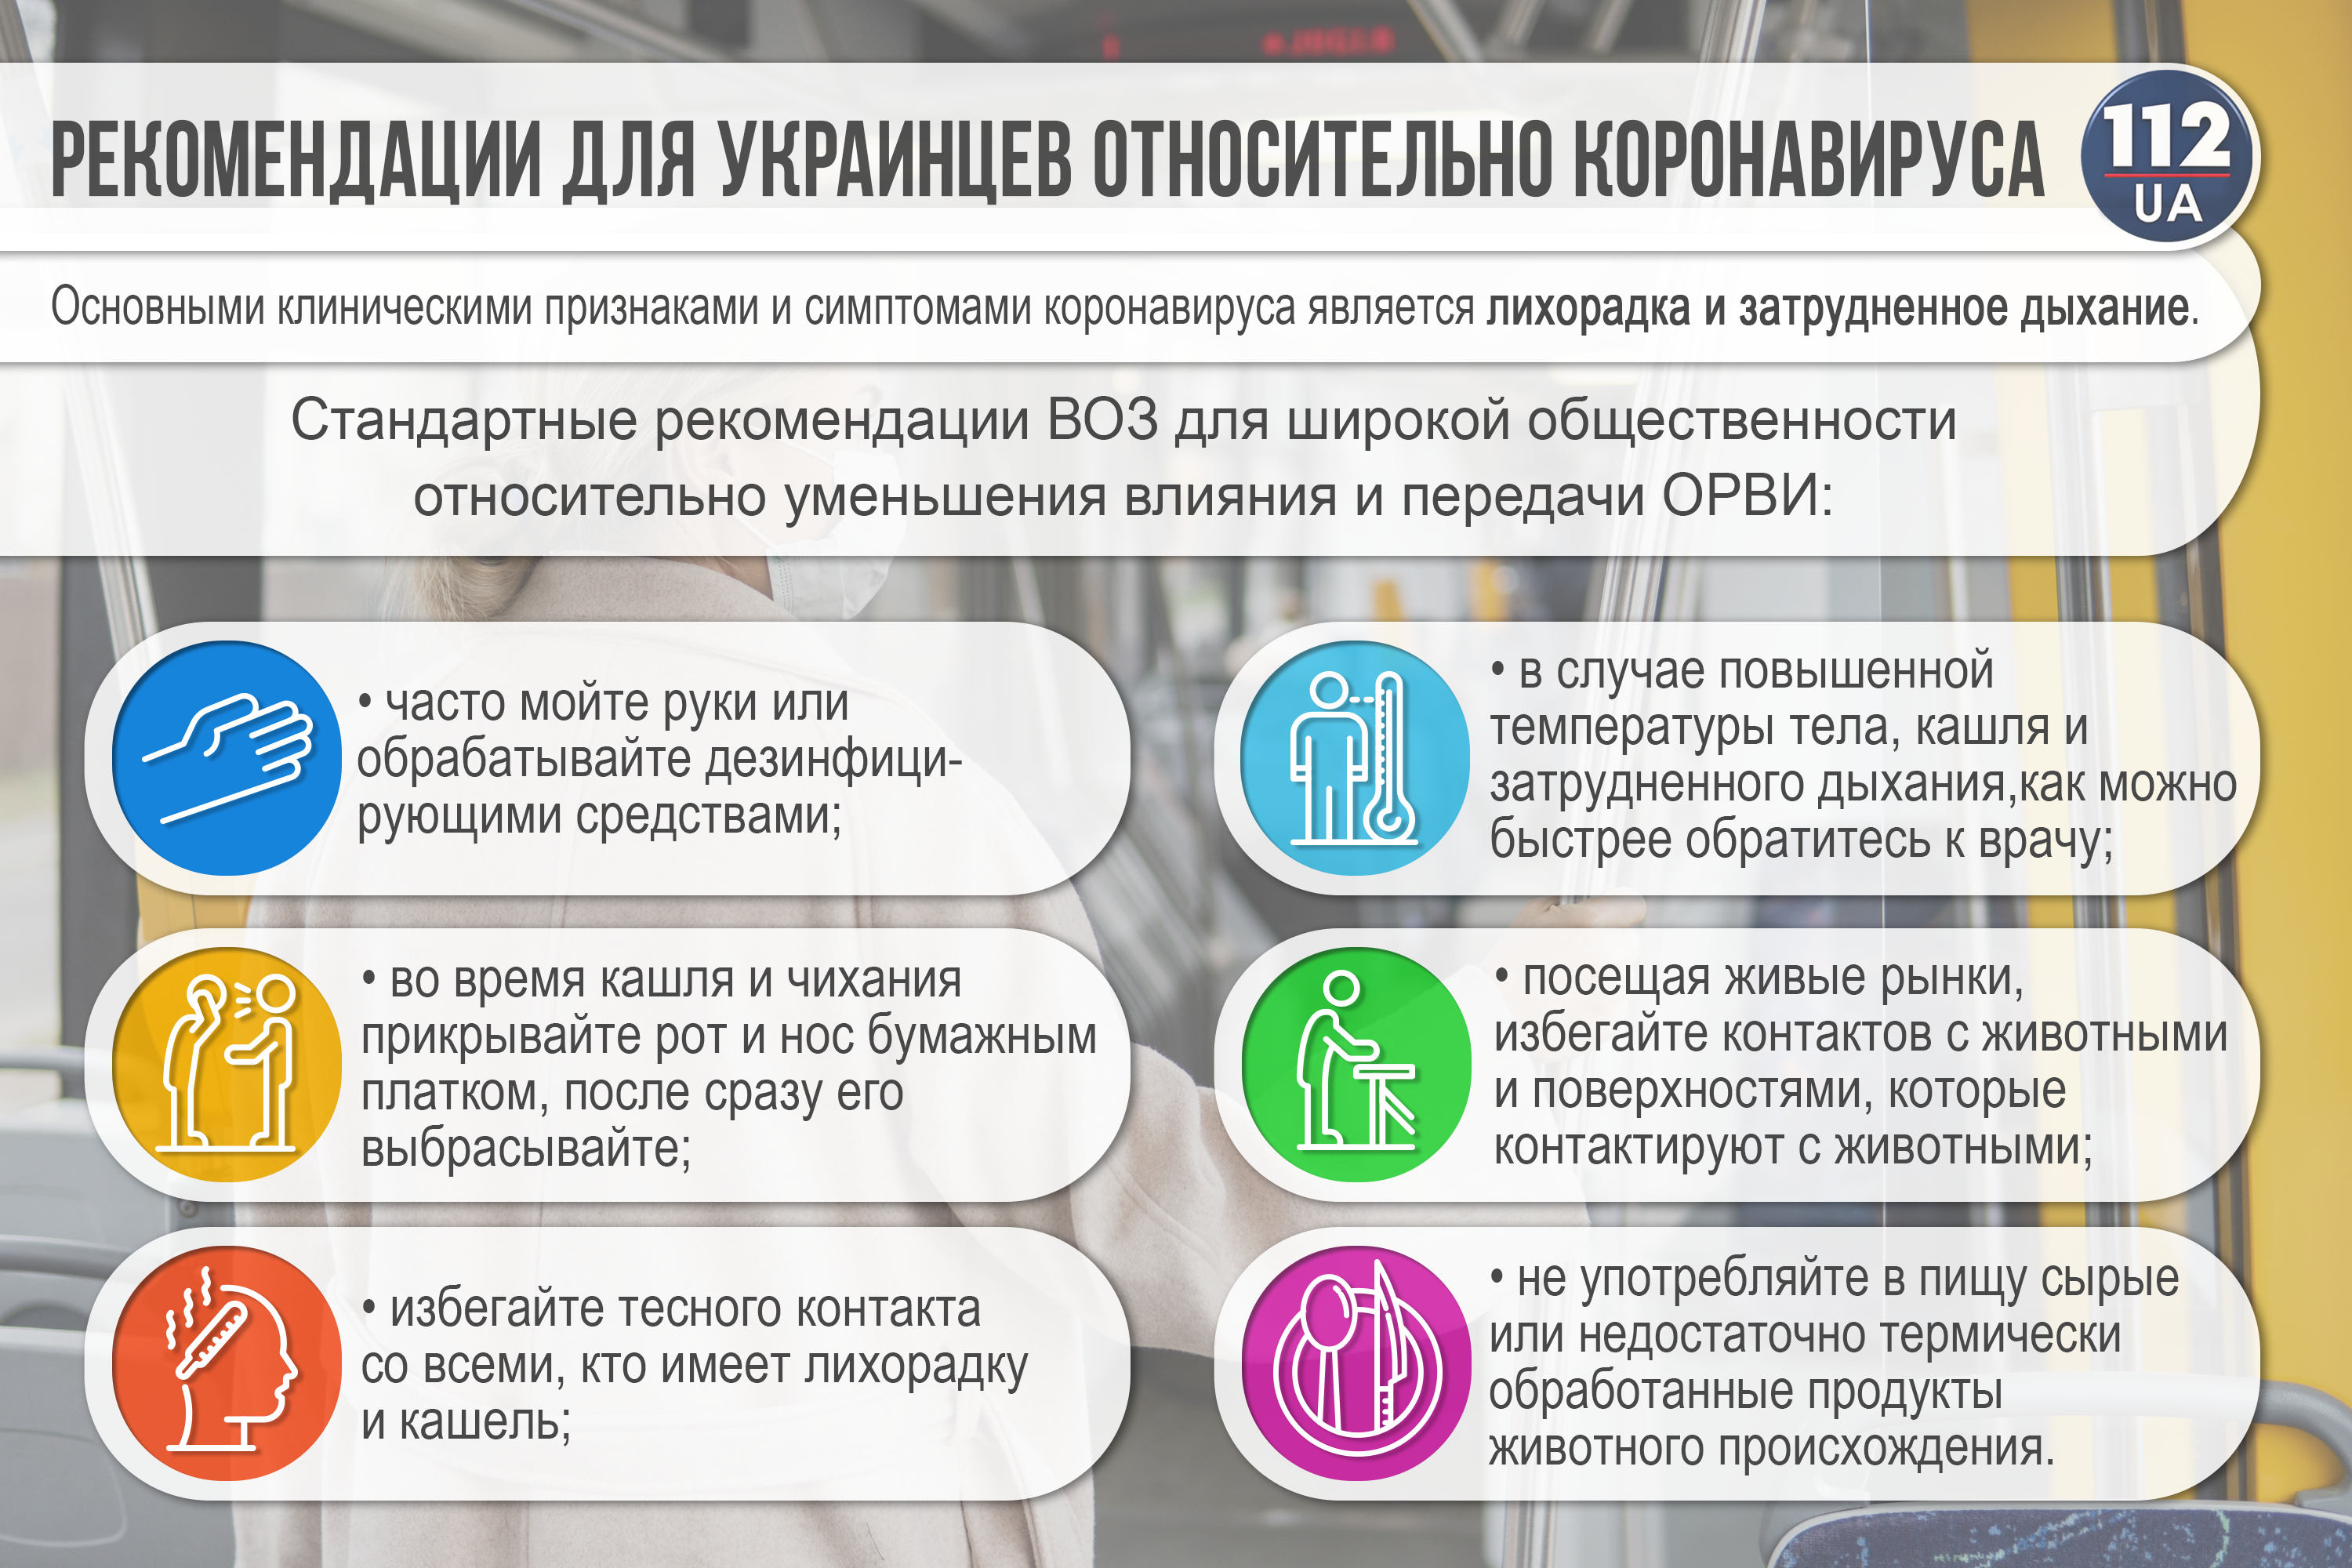 Статистика COVID-19 по Киеву на 2 июля 2020